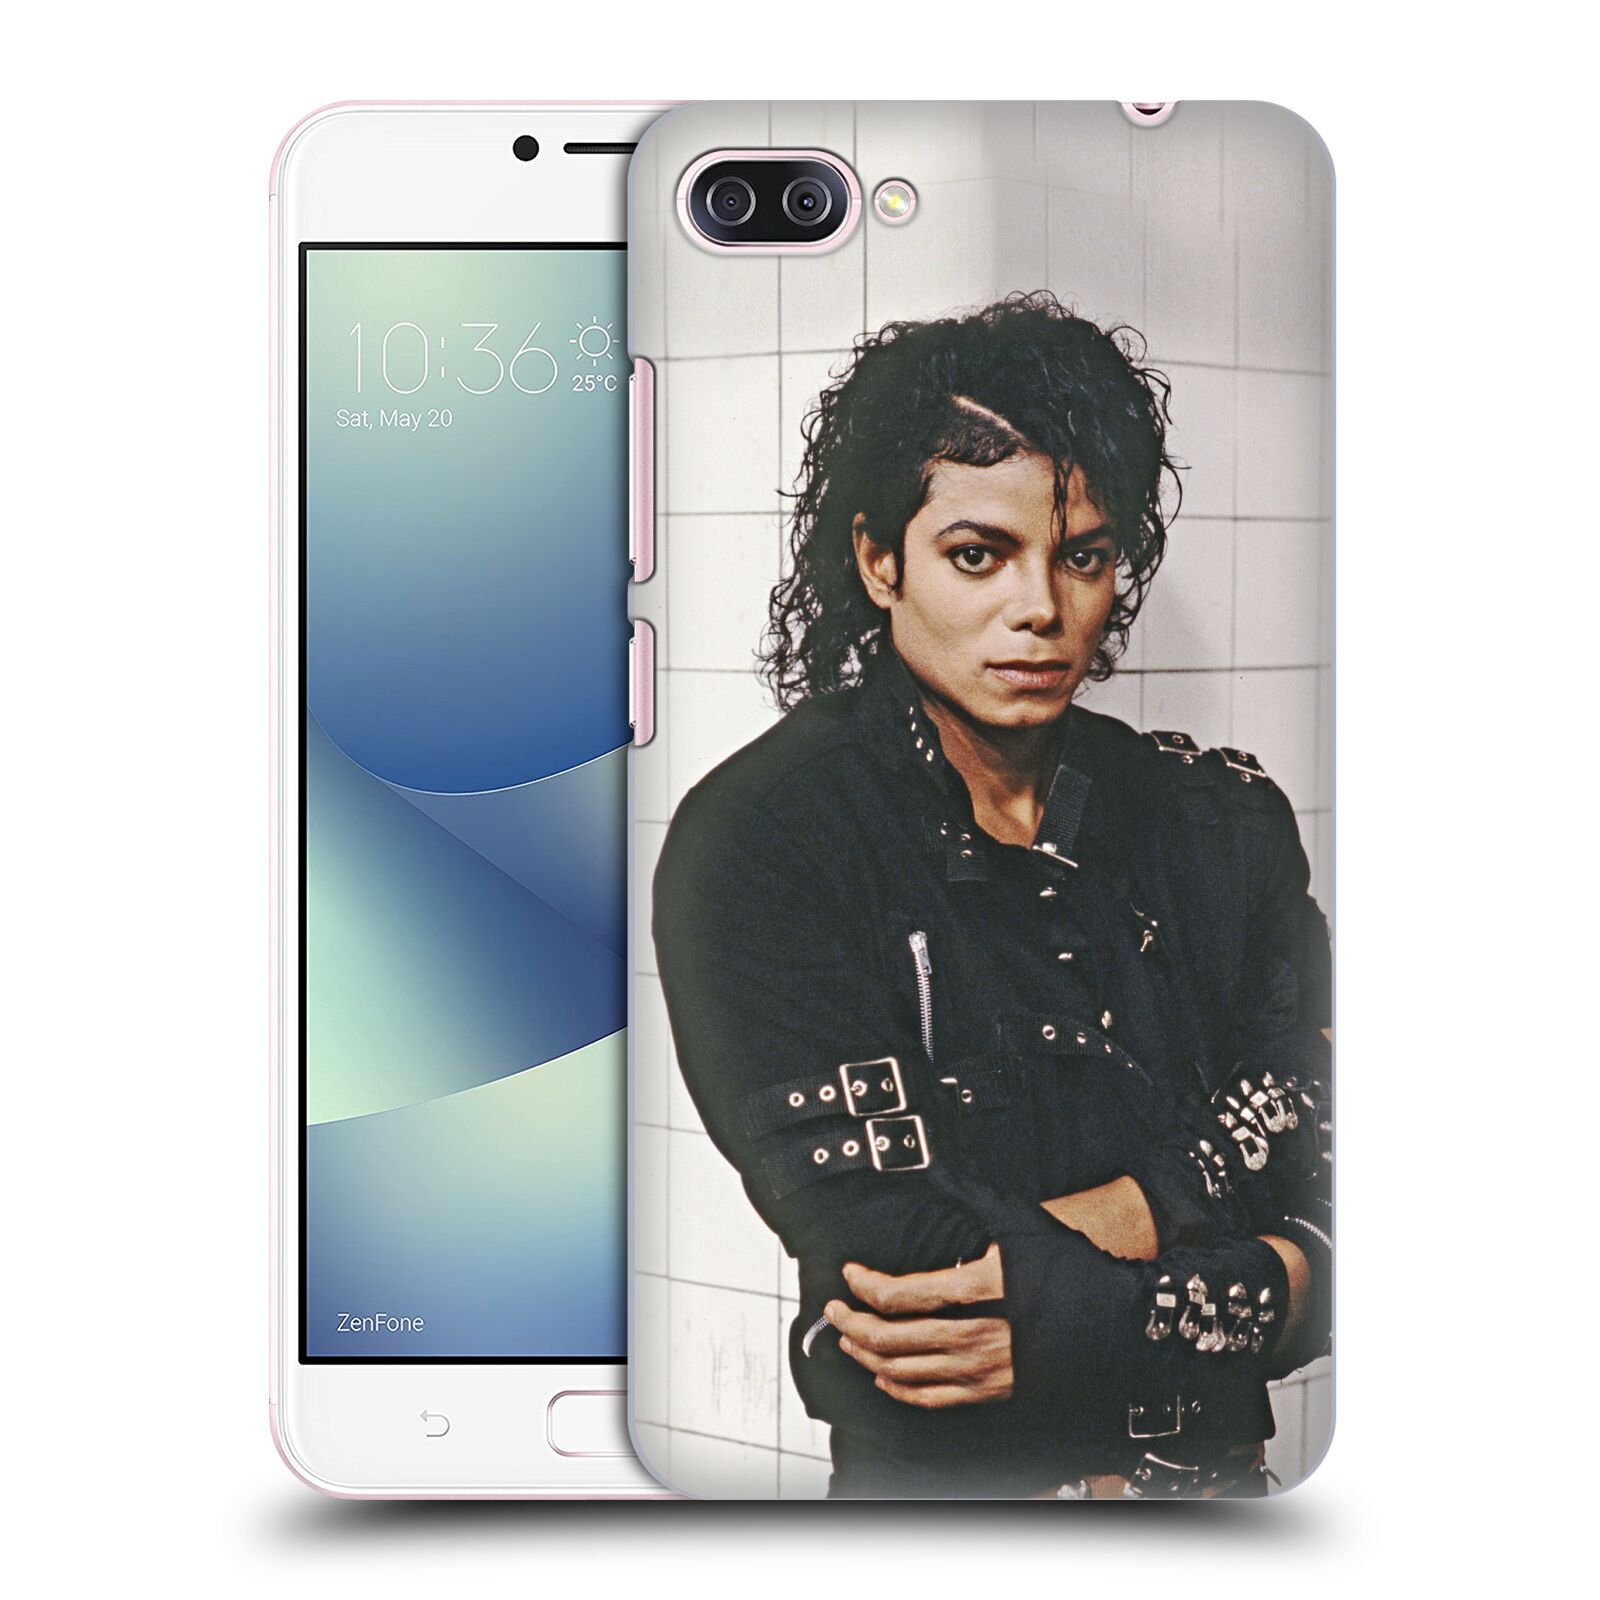 Zadní obal pro mobil Asus Zenfone 4 MAX / 4 MAX PRO (ZC554KL) - HEAD CASE - Zpěvák Michael Jackson - pohled